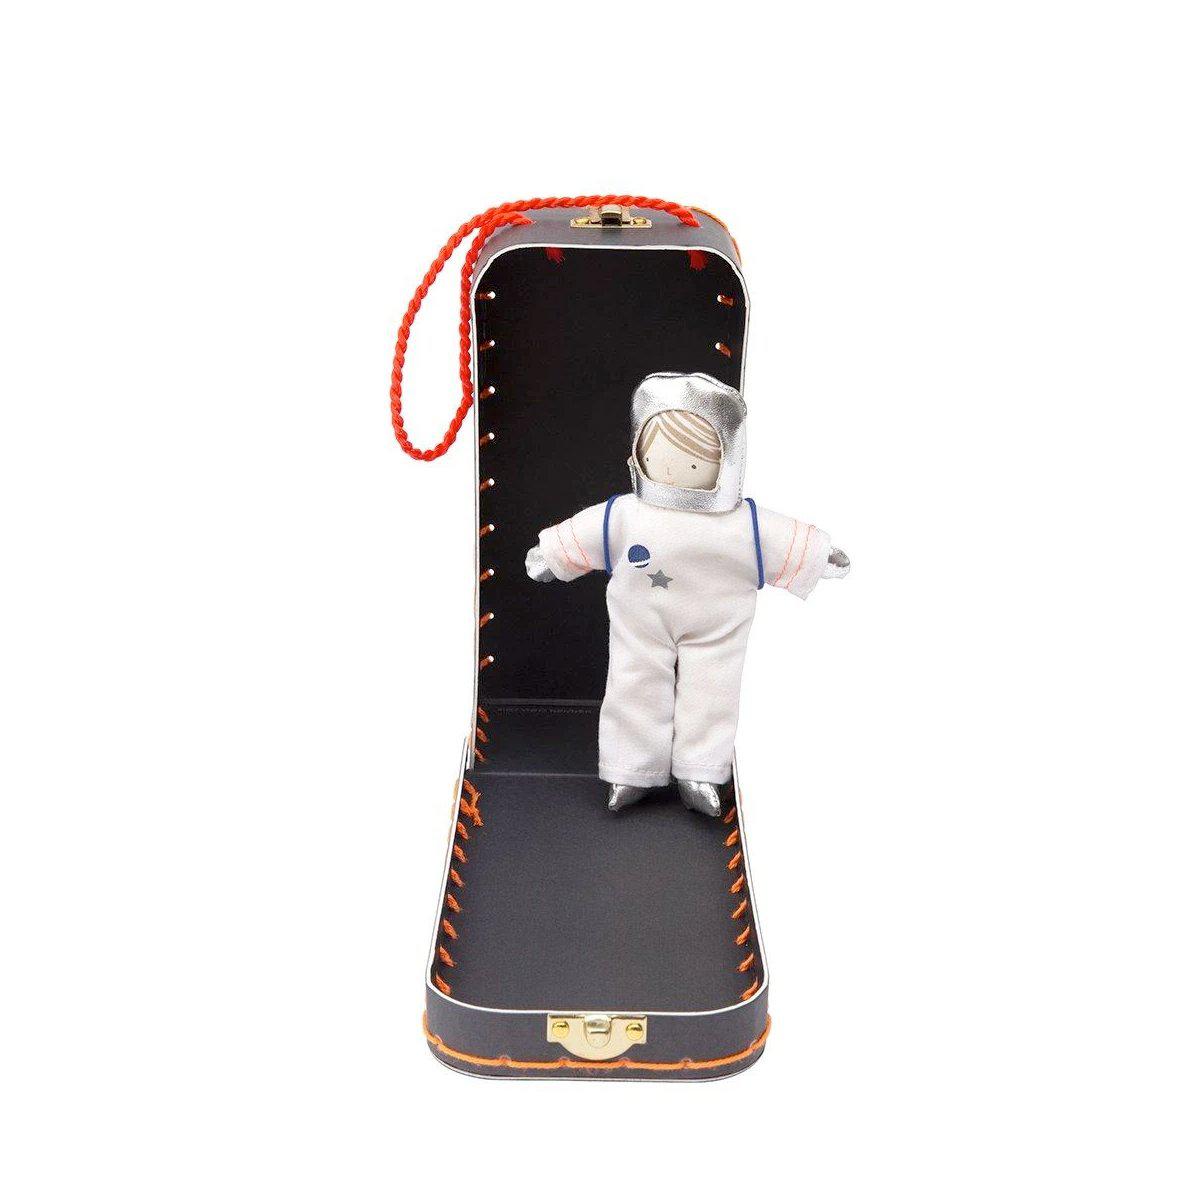 Meri Meri mini astronaut suitcase